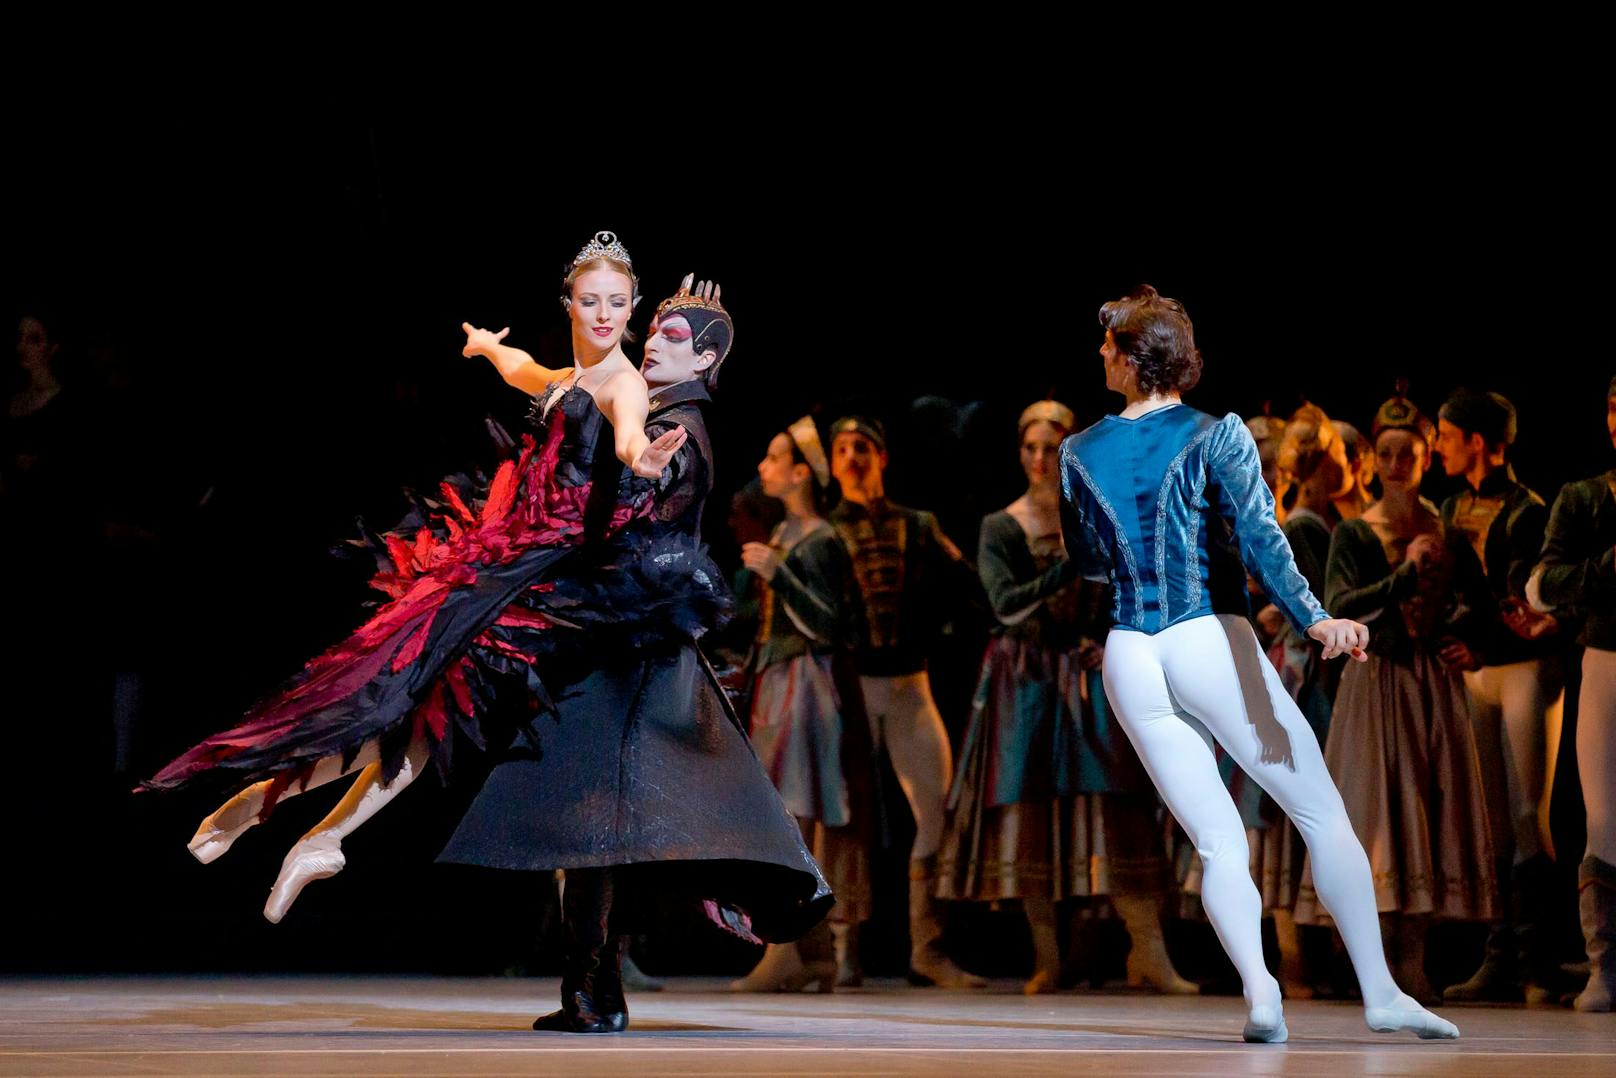 Ballett Schwanensee in der Wiener Staatsoper, mit Olga Esina als Odette/Odile und Vladimir Shishov als Prinz Siegfried.